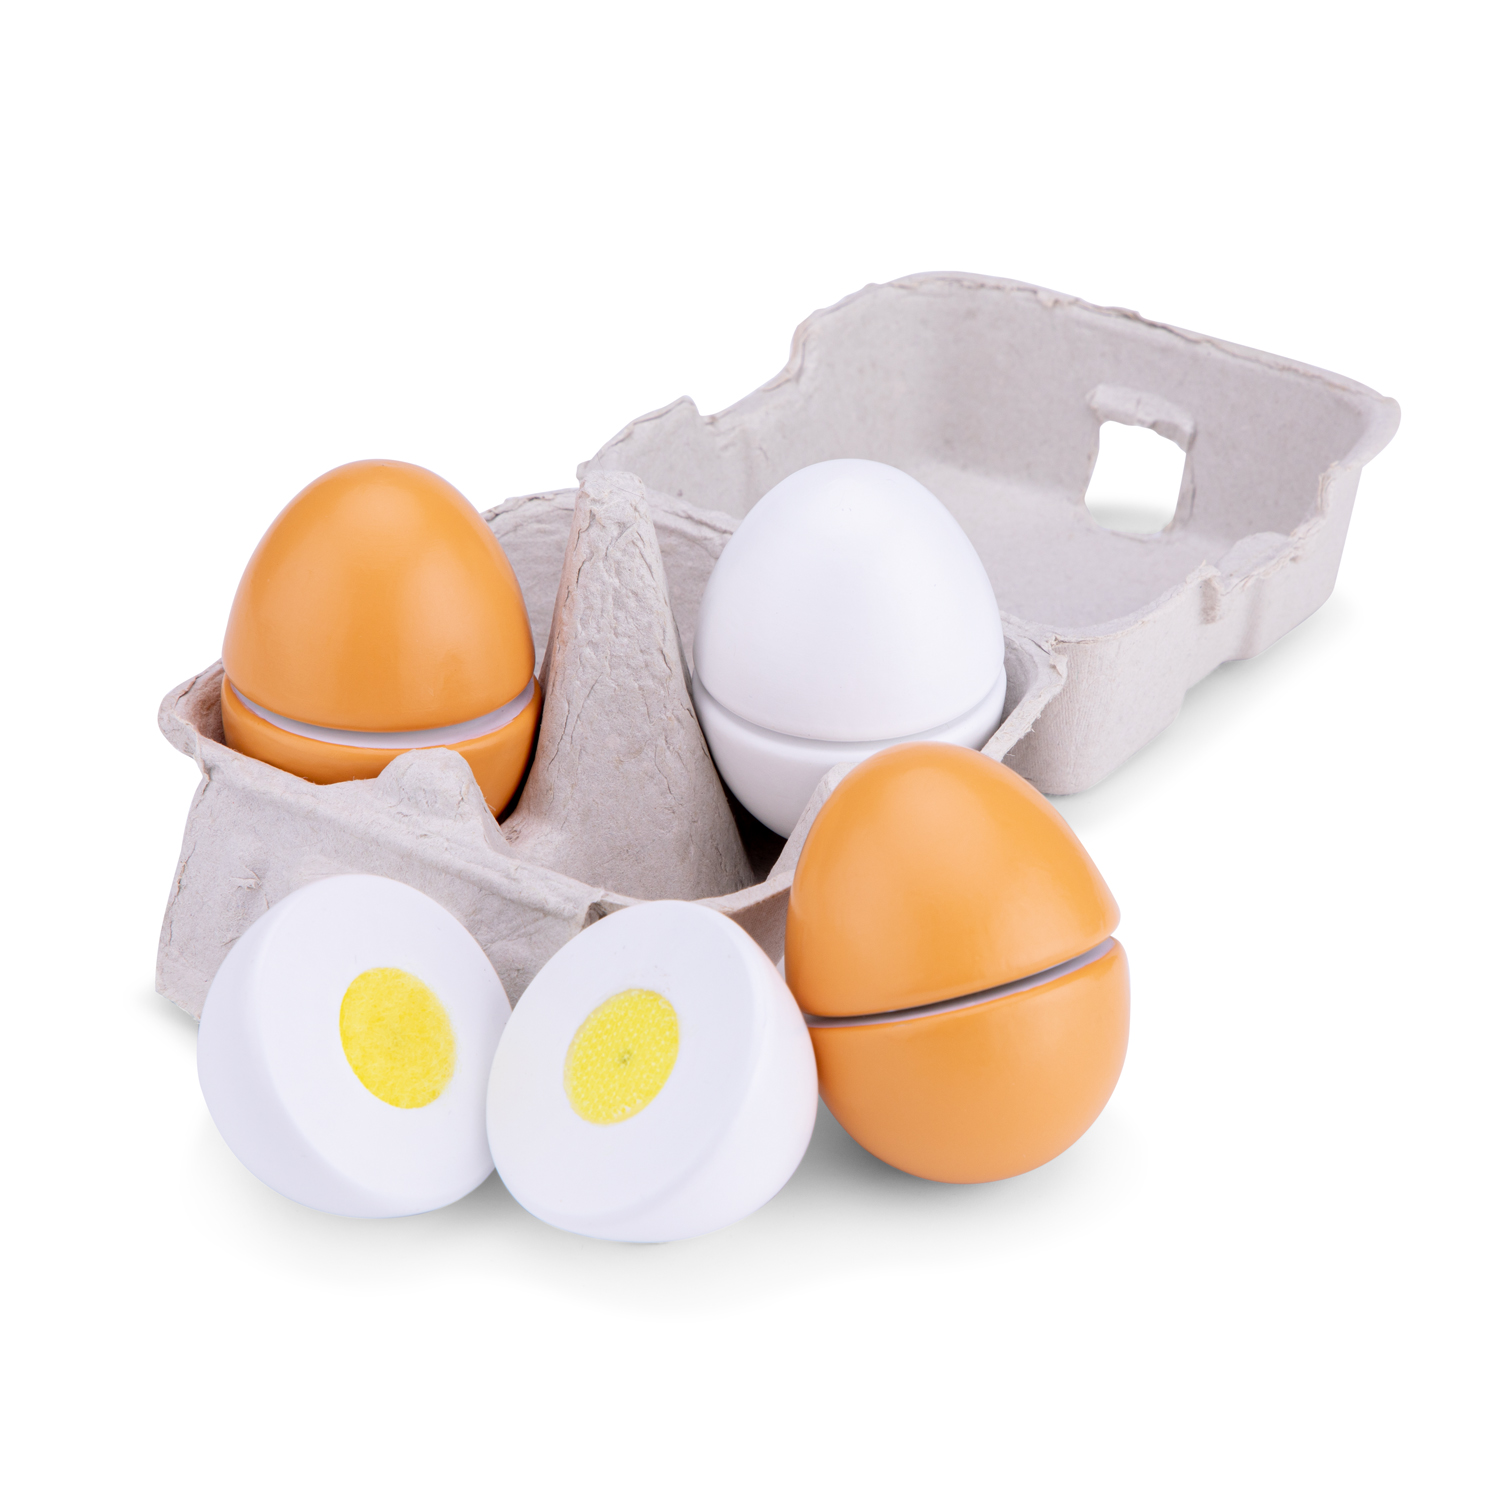 Egg toys. Игрушка яйца в коробке. Игрушечные яйца для детей. Яйцо для мужчин игрушка. Игрушечный яйца резиновые.